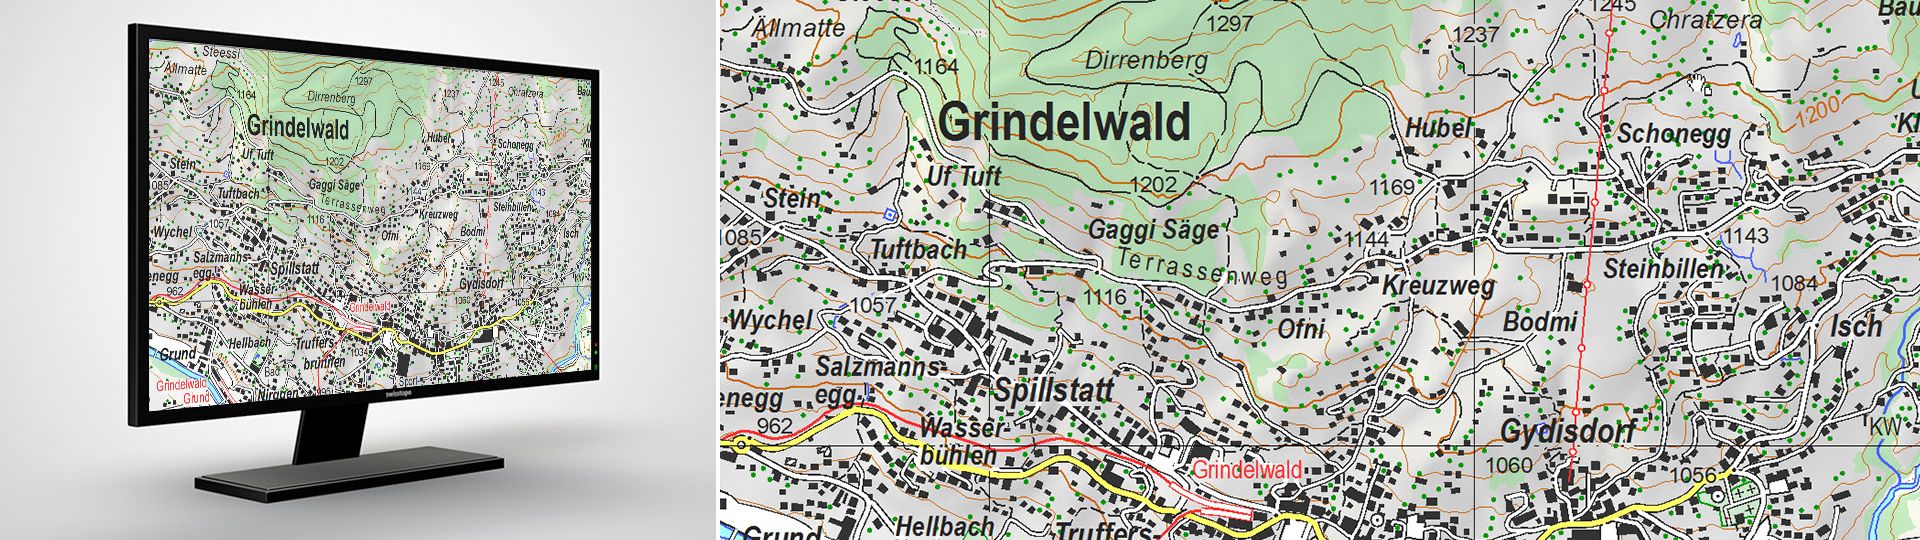 Swiss Map Vector 25: carta geografica vettoriale della Svizzera 1:25 000